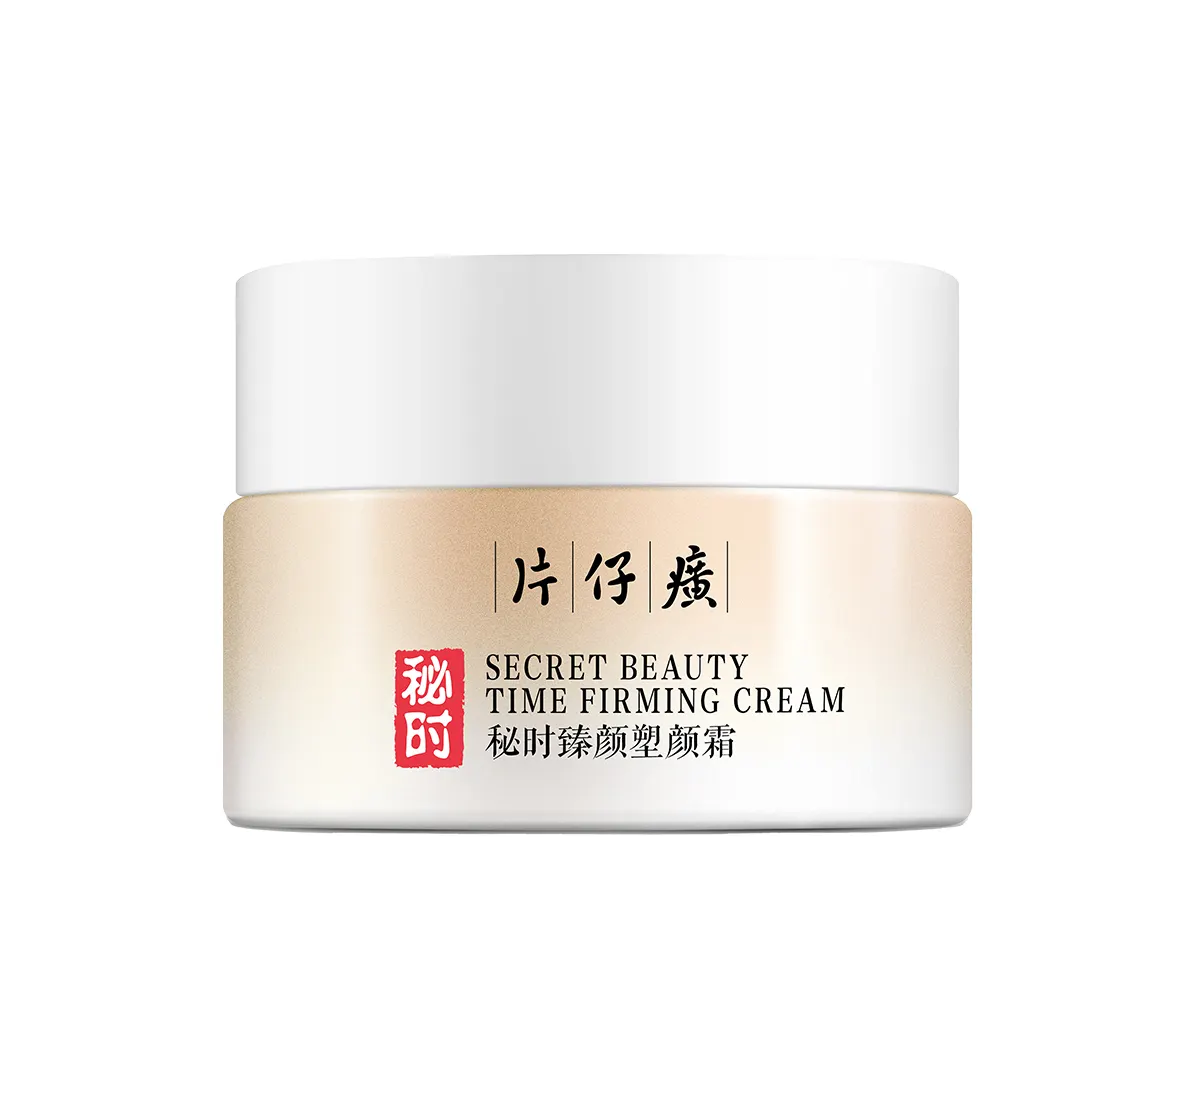 Pien Tze Huang Secret Time Beauty Shaping Creme 50g straffende elastische Anti-Aging-Creme verblassen feine Linien, erhellen und nähren